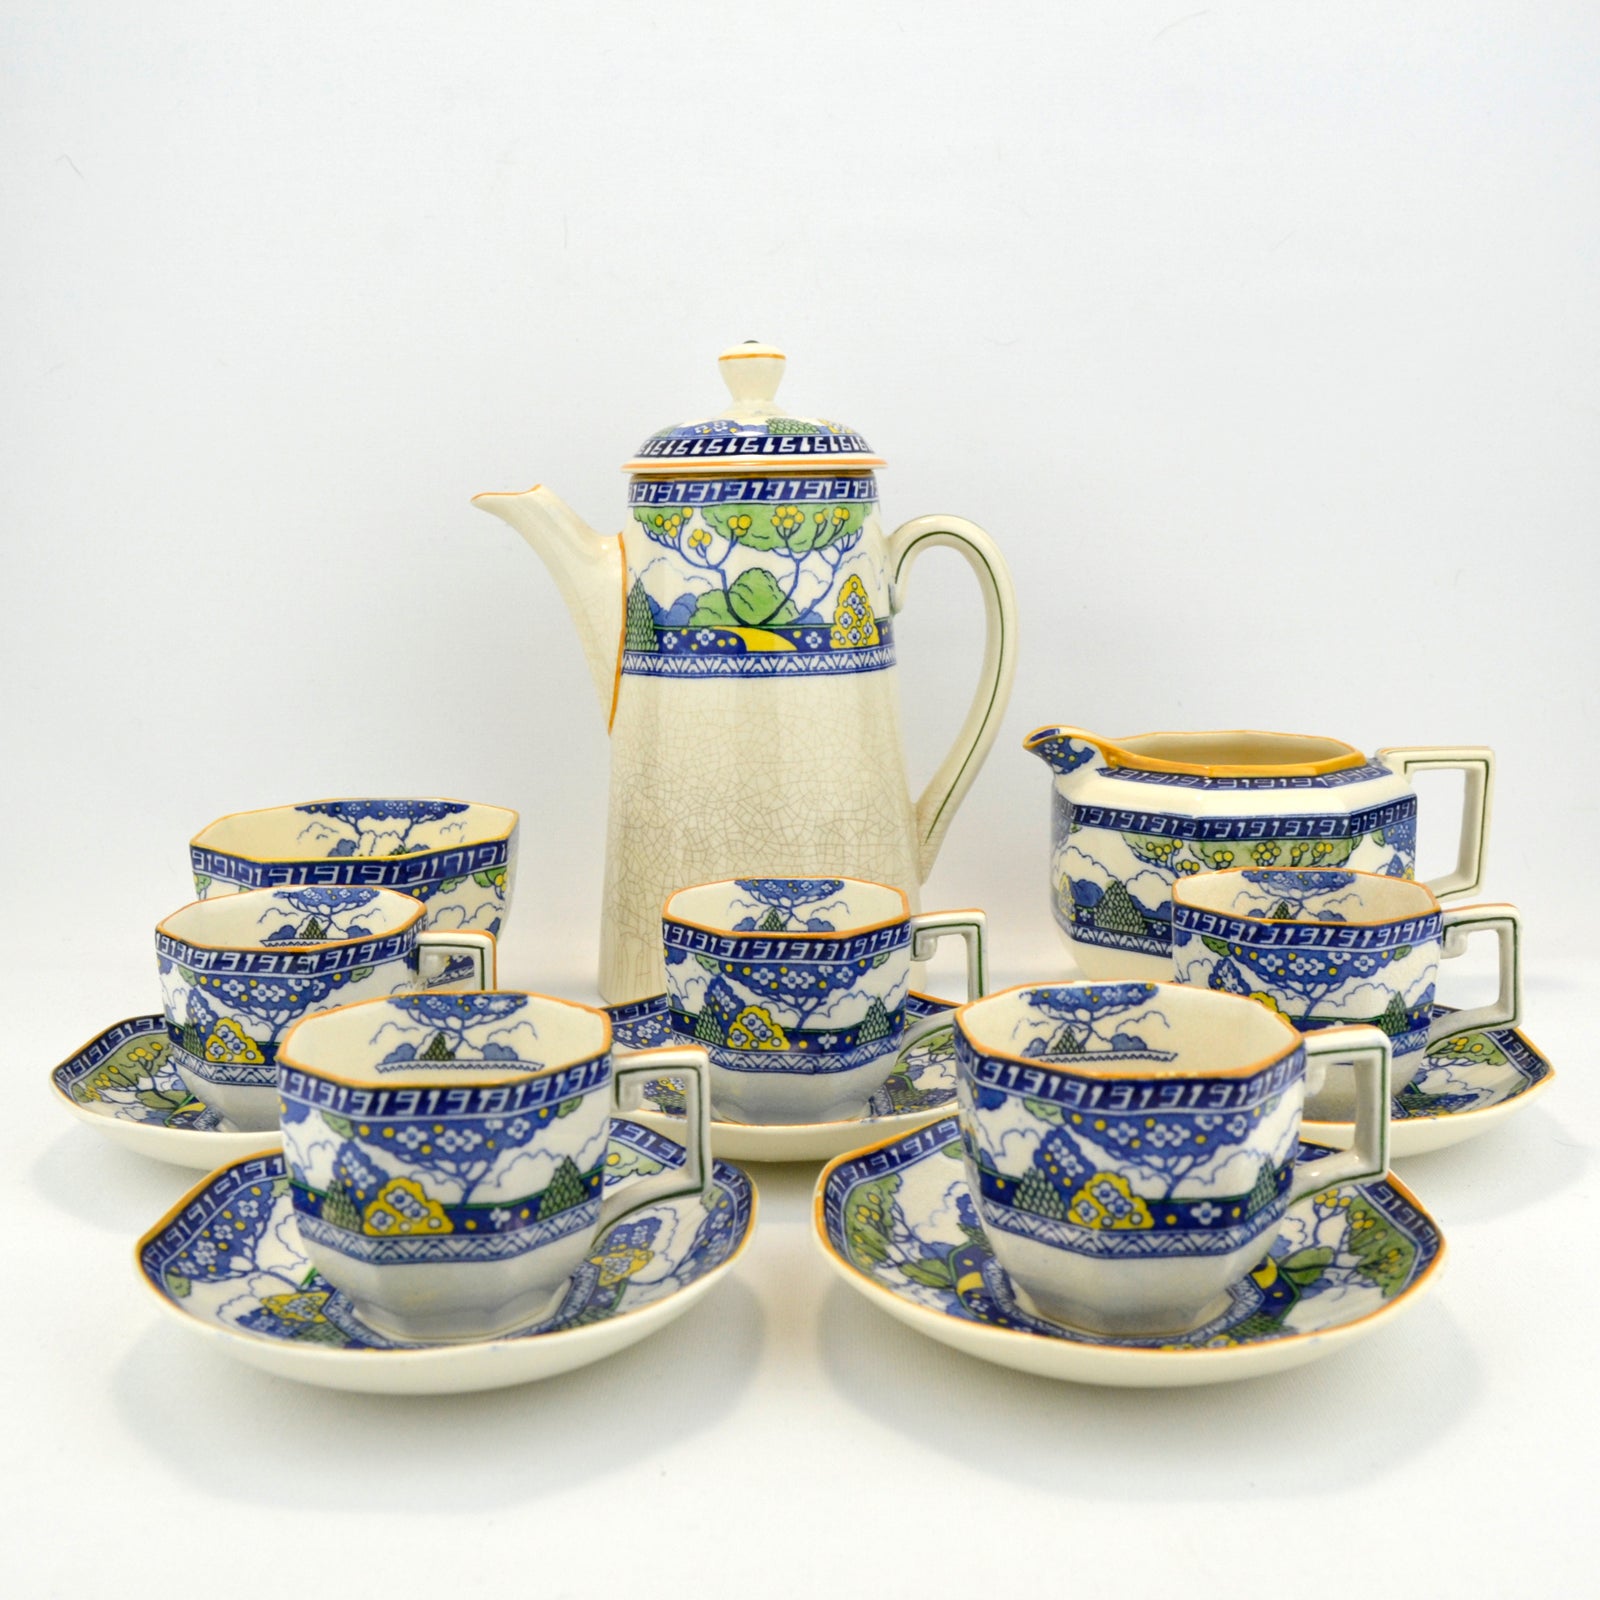 Royal Doulton Merryweather Tea Set